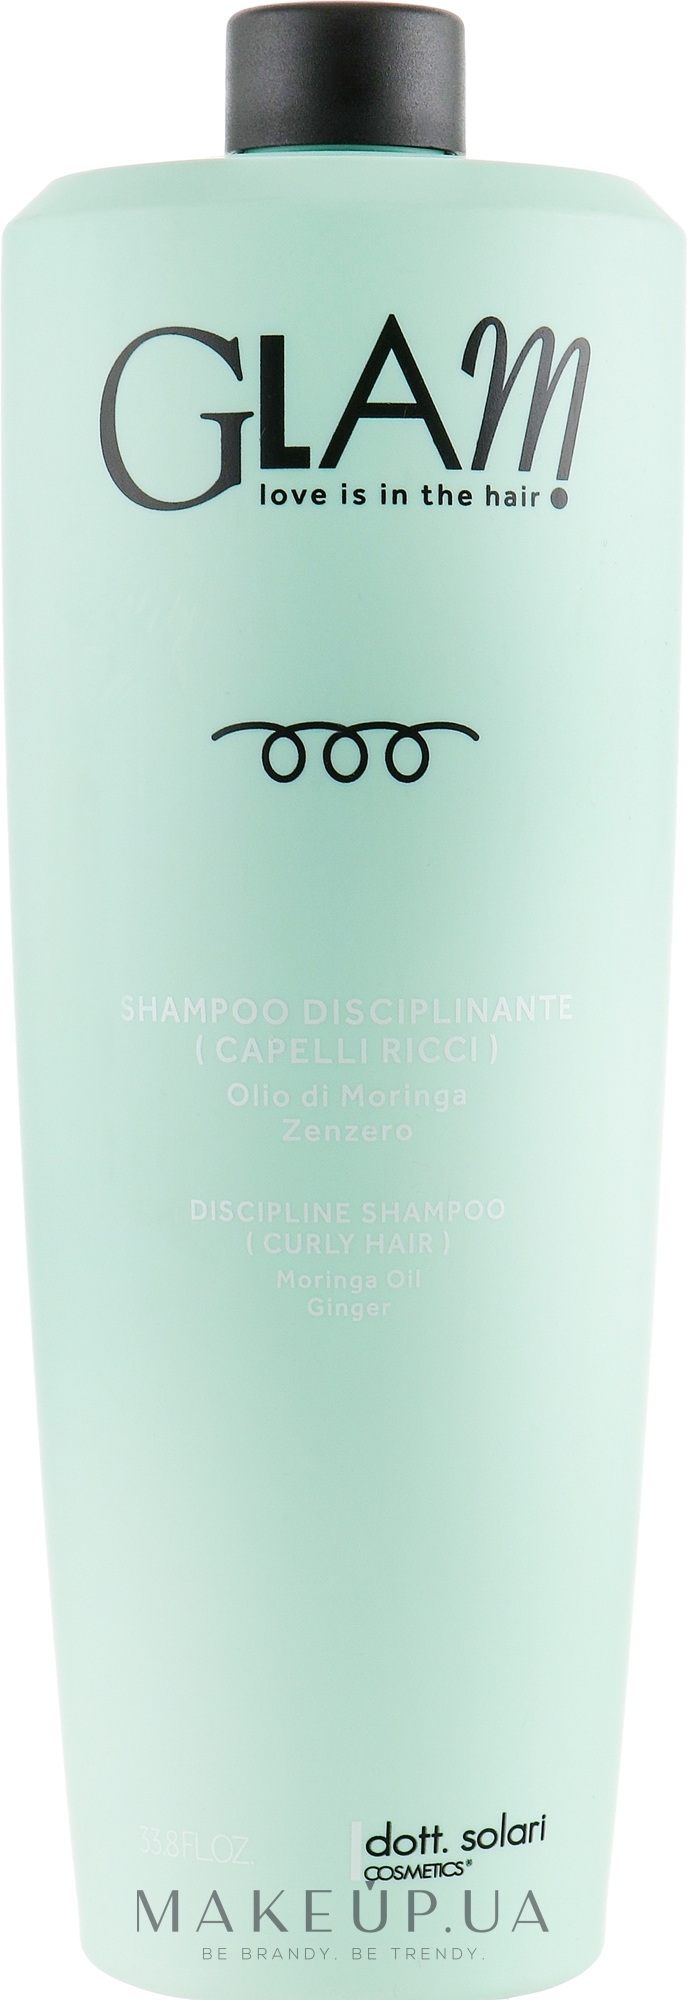 Шампунь дисциплінарний для в'юнкого волосся - Dott. Solari Glam Discipline Shampoo Curly Hair — фото 1000ml